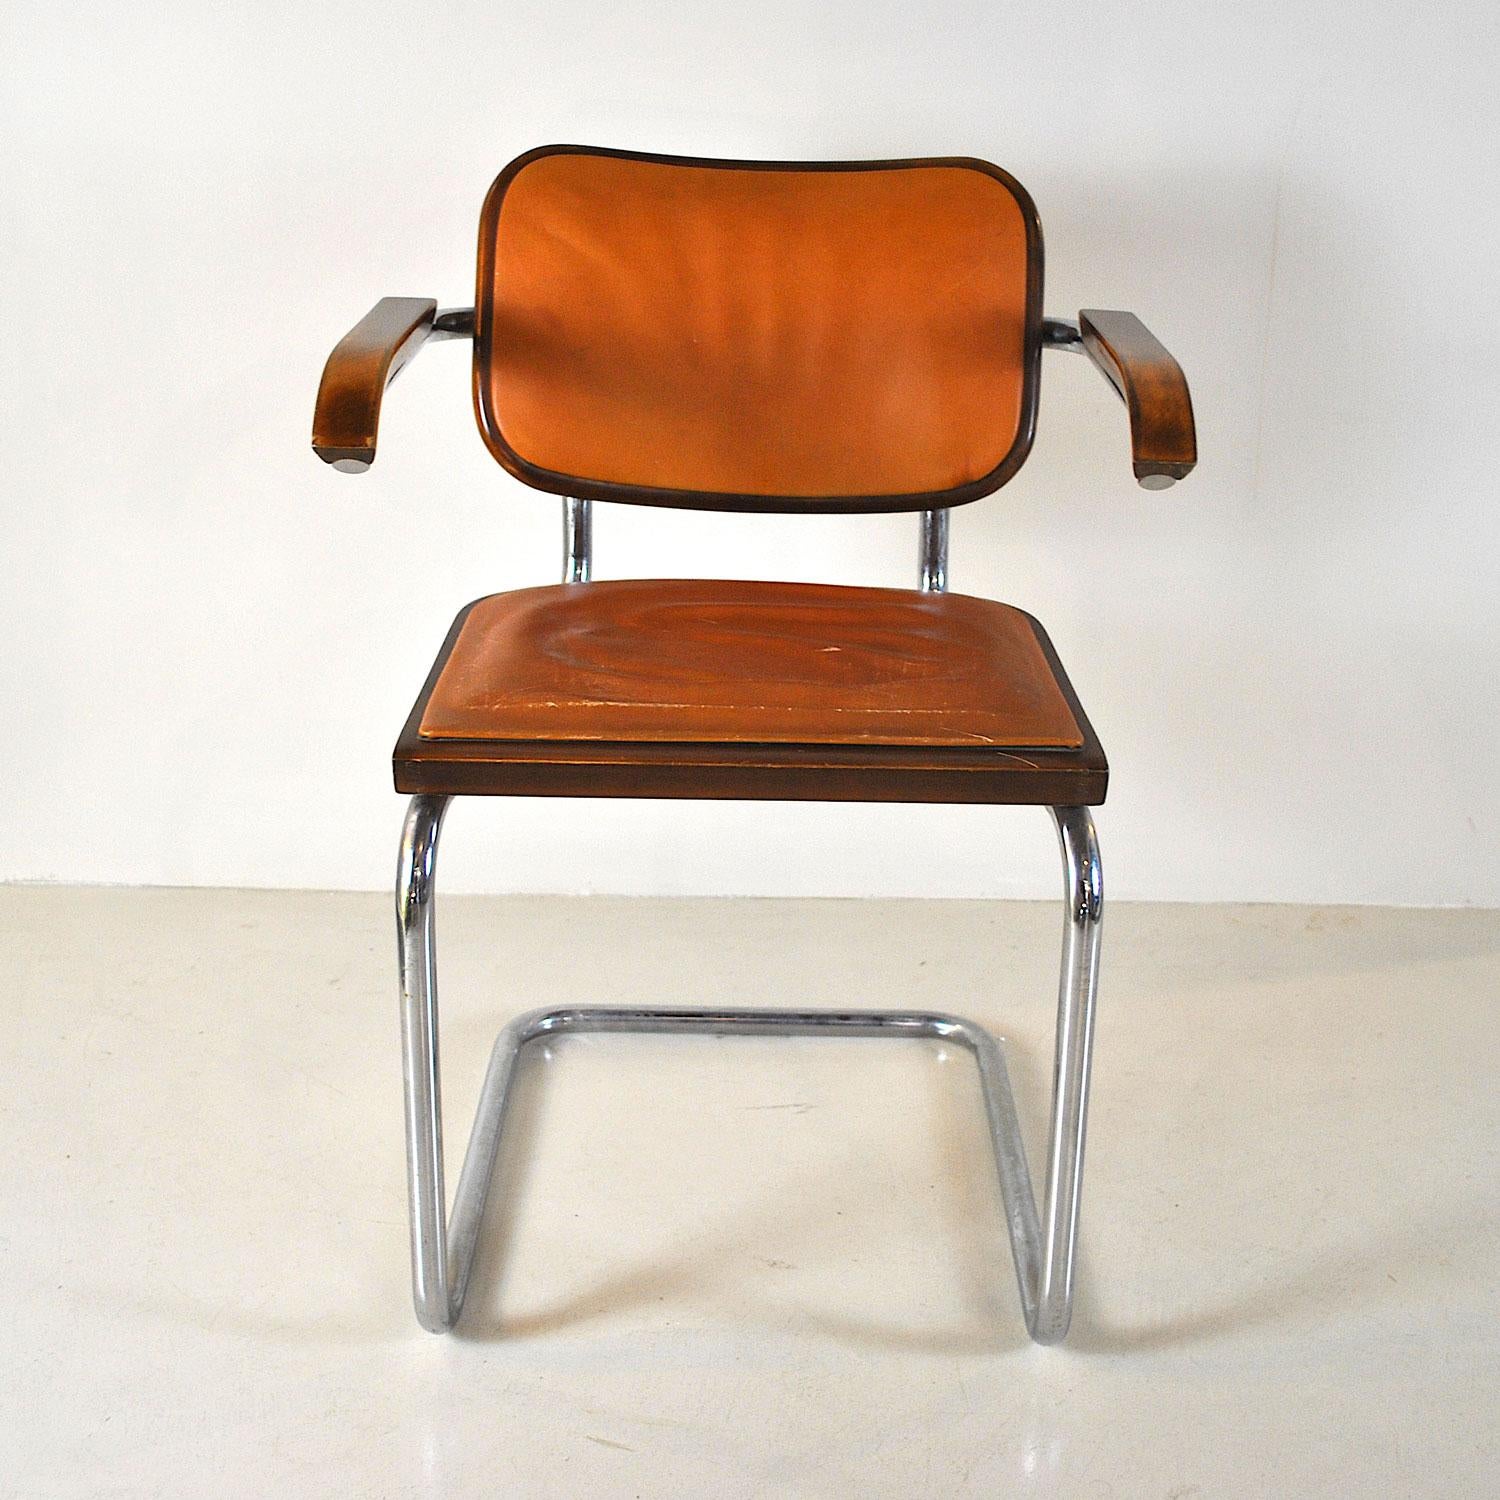 Stuhl im Stil Modell Cesca S64 von Marcel Breuer aus den 1960er Jahren in Holz und Ofenhaut.